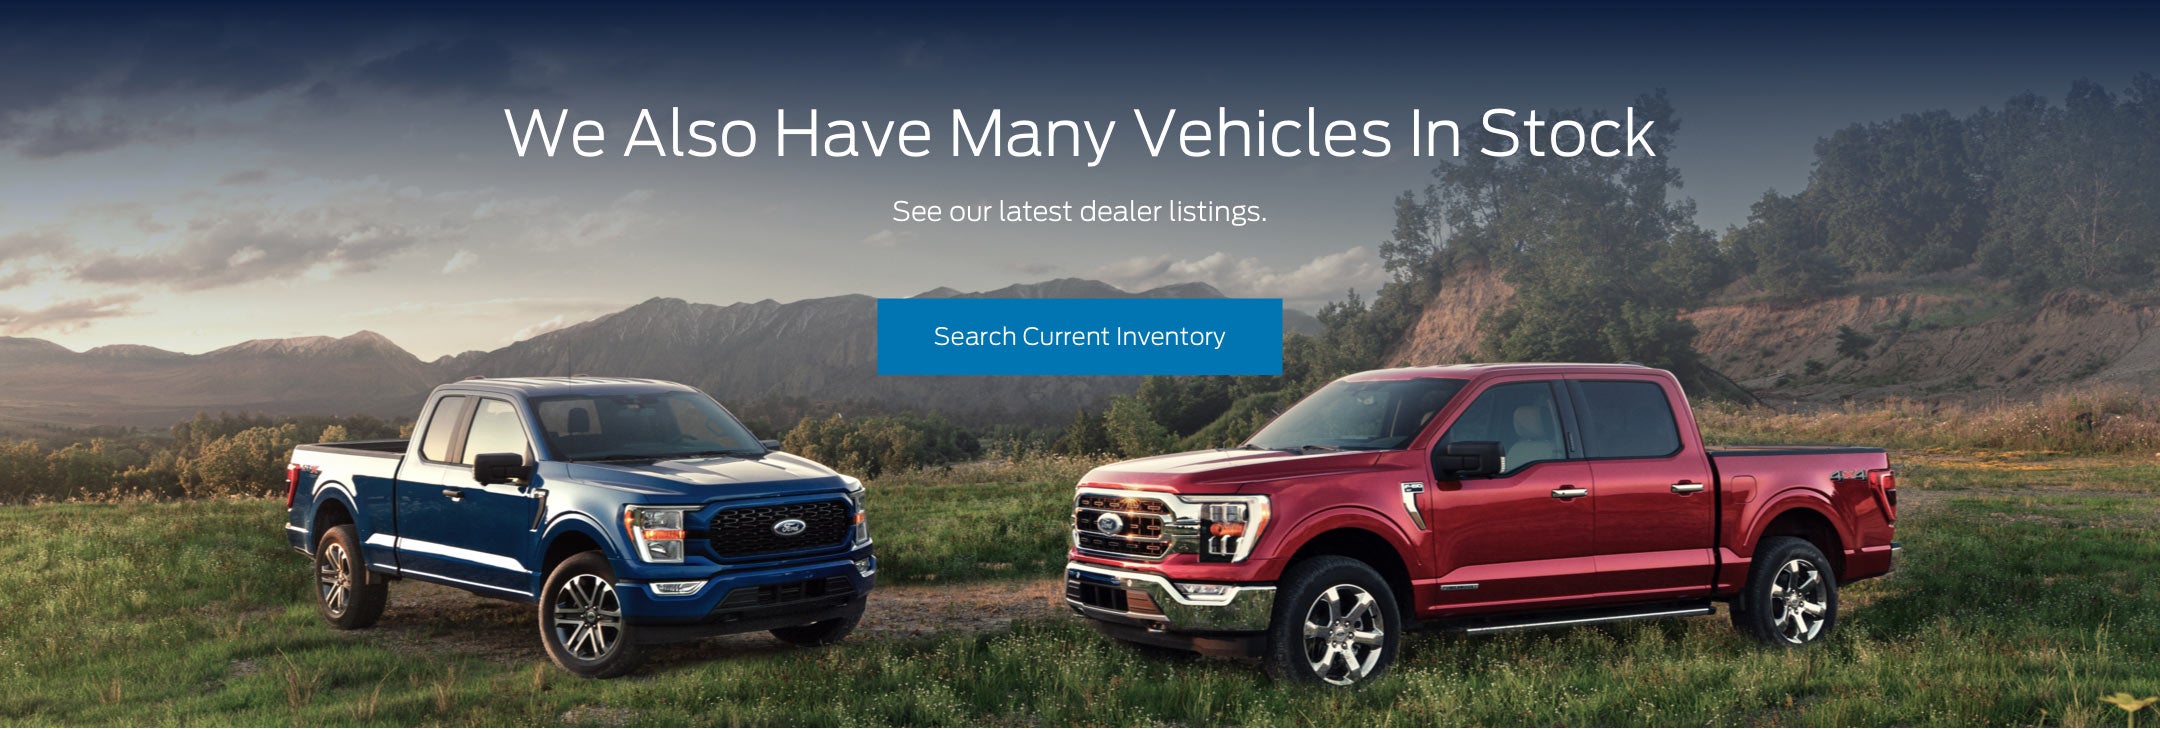 Ford vehicles in stock | Harbin Motor Company in Scottsboro AL